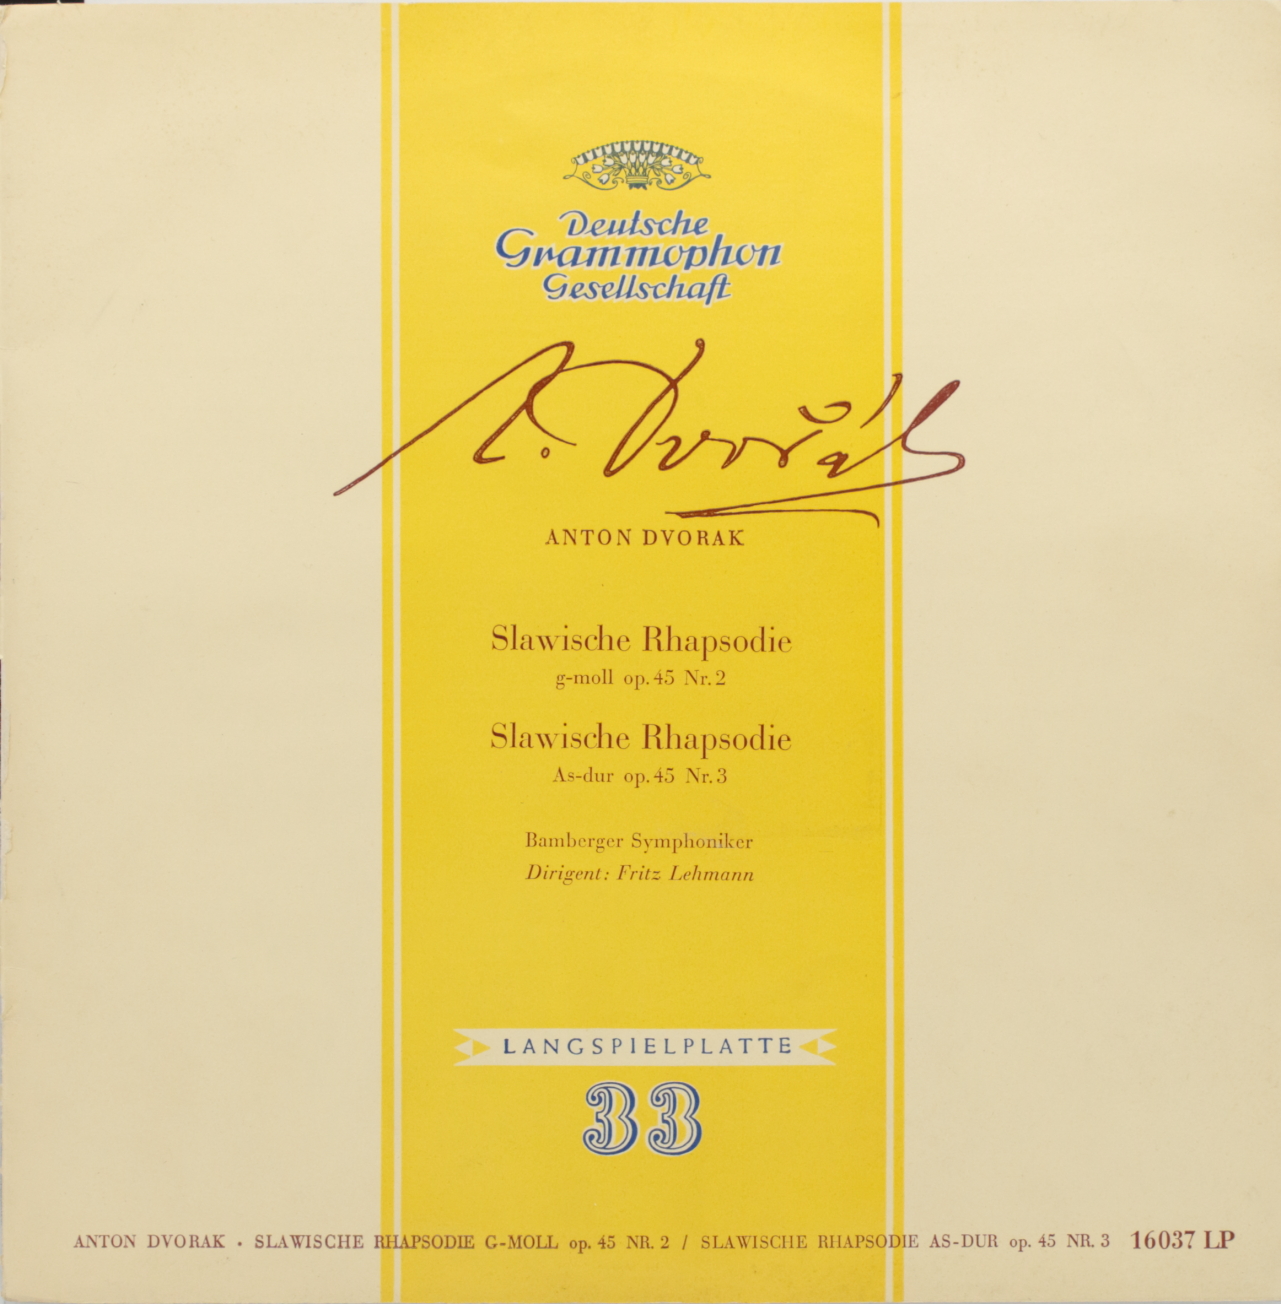 Dvorak: Slawische Rhapsodie g-moll op. 45 Nº 2, Slawische Rhapsodie As-dur op. 45 Nº 3